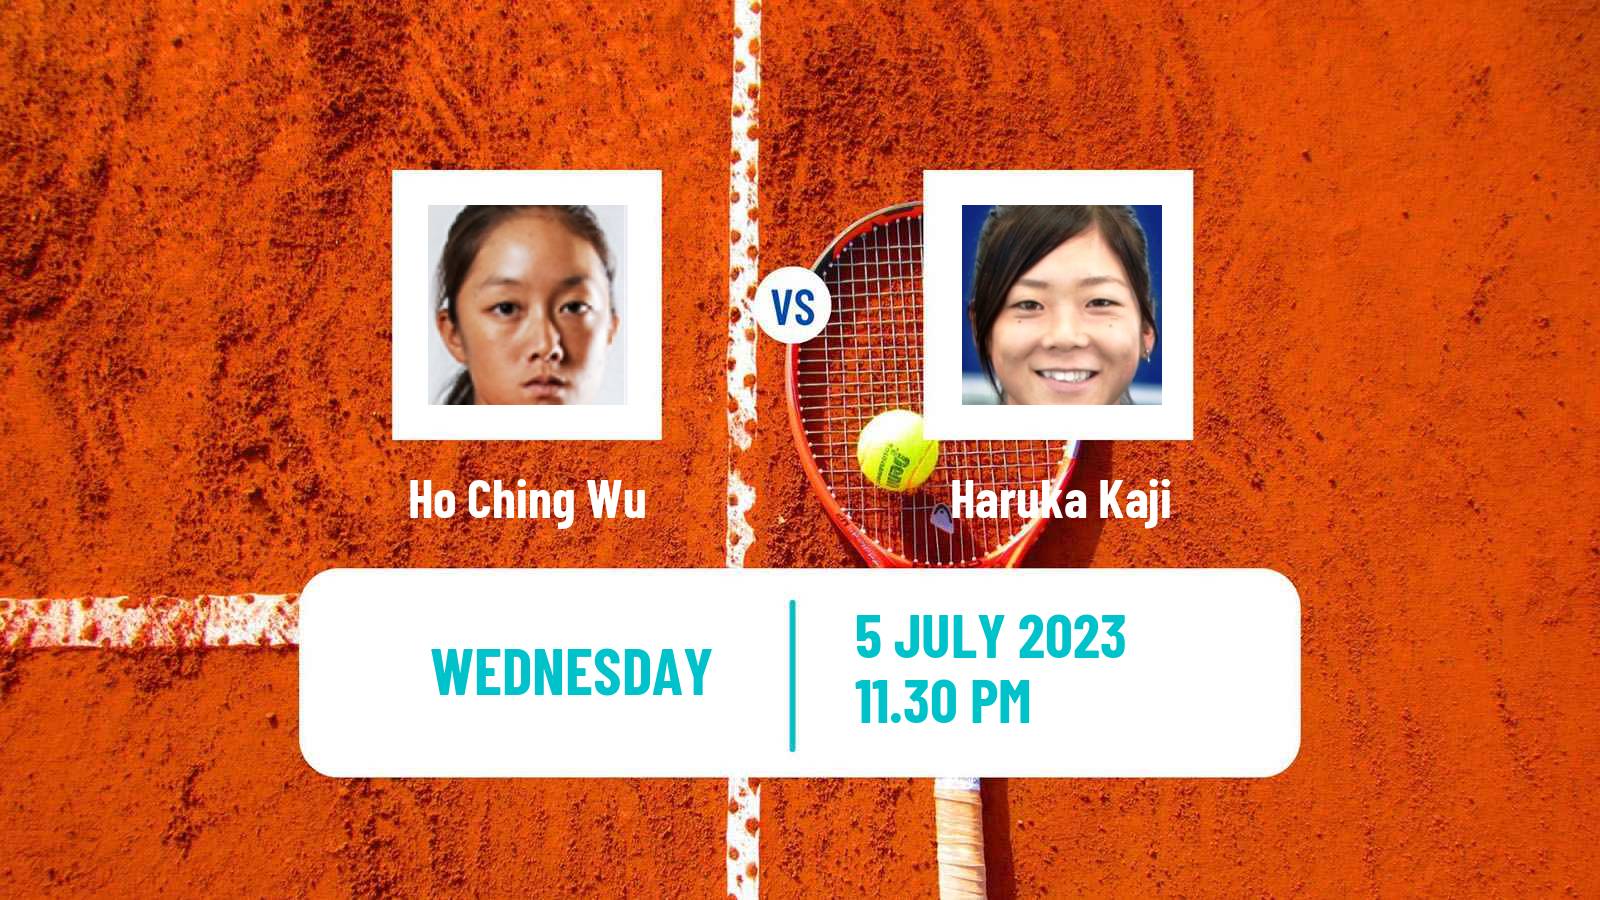 Tennis ITF W40 Hong Kong Women Ho Ching Wu - Haruka Kaji